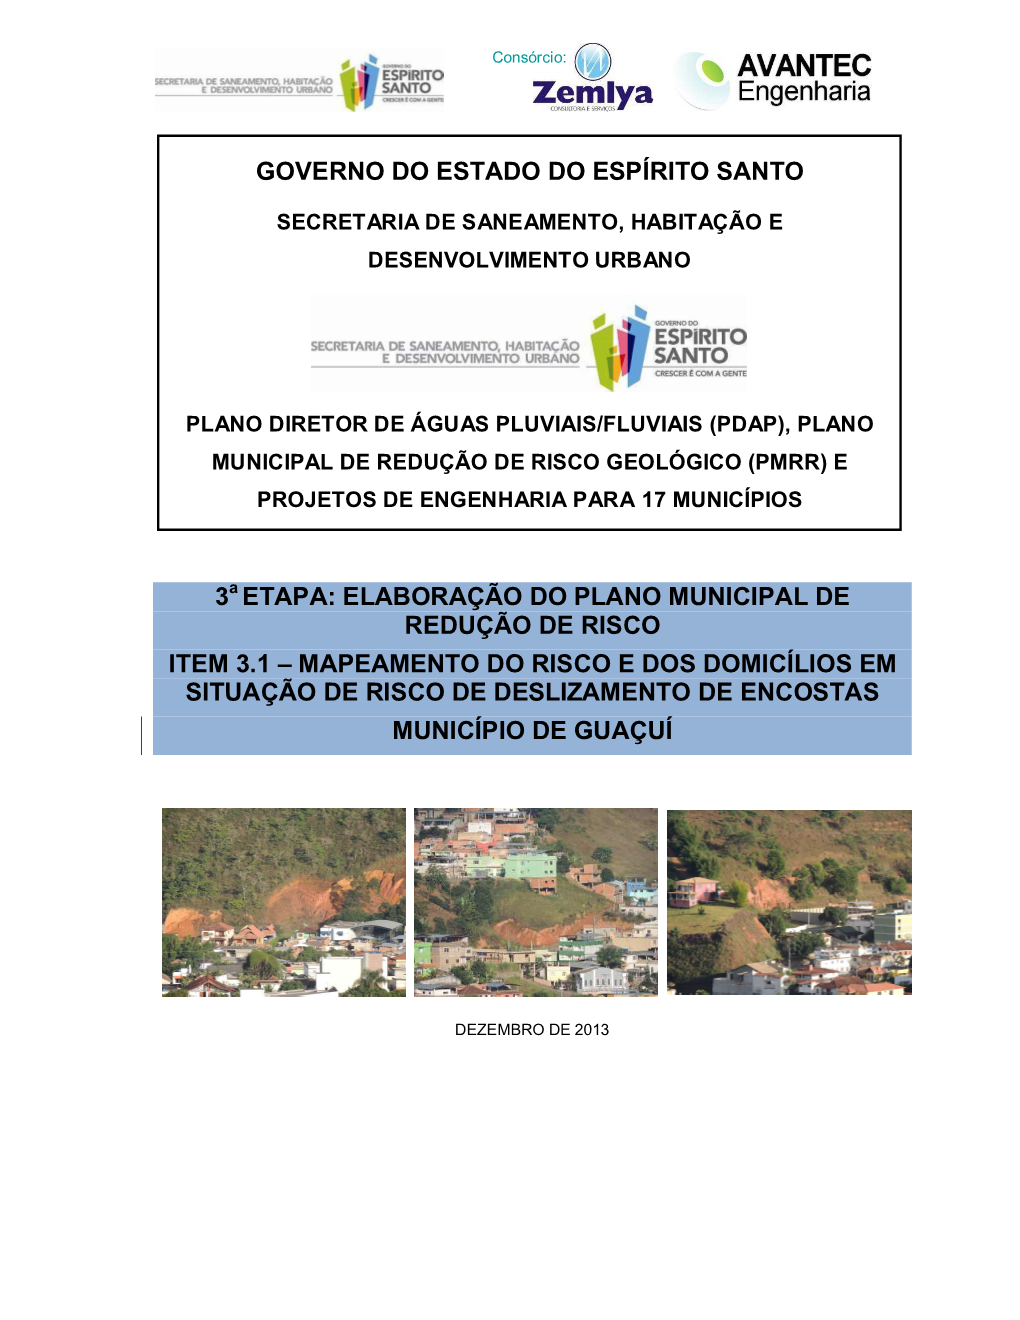 Mapeamento Do Risco E Dos Domicílios Em Situação De Risco De Deslizamento De Encostas Município De Guaçuí